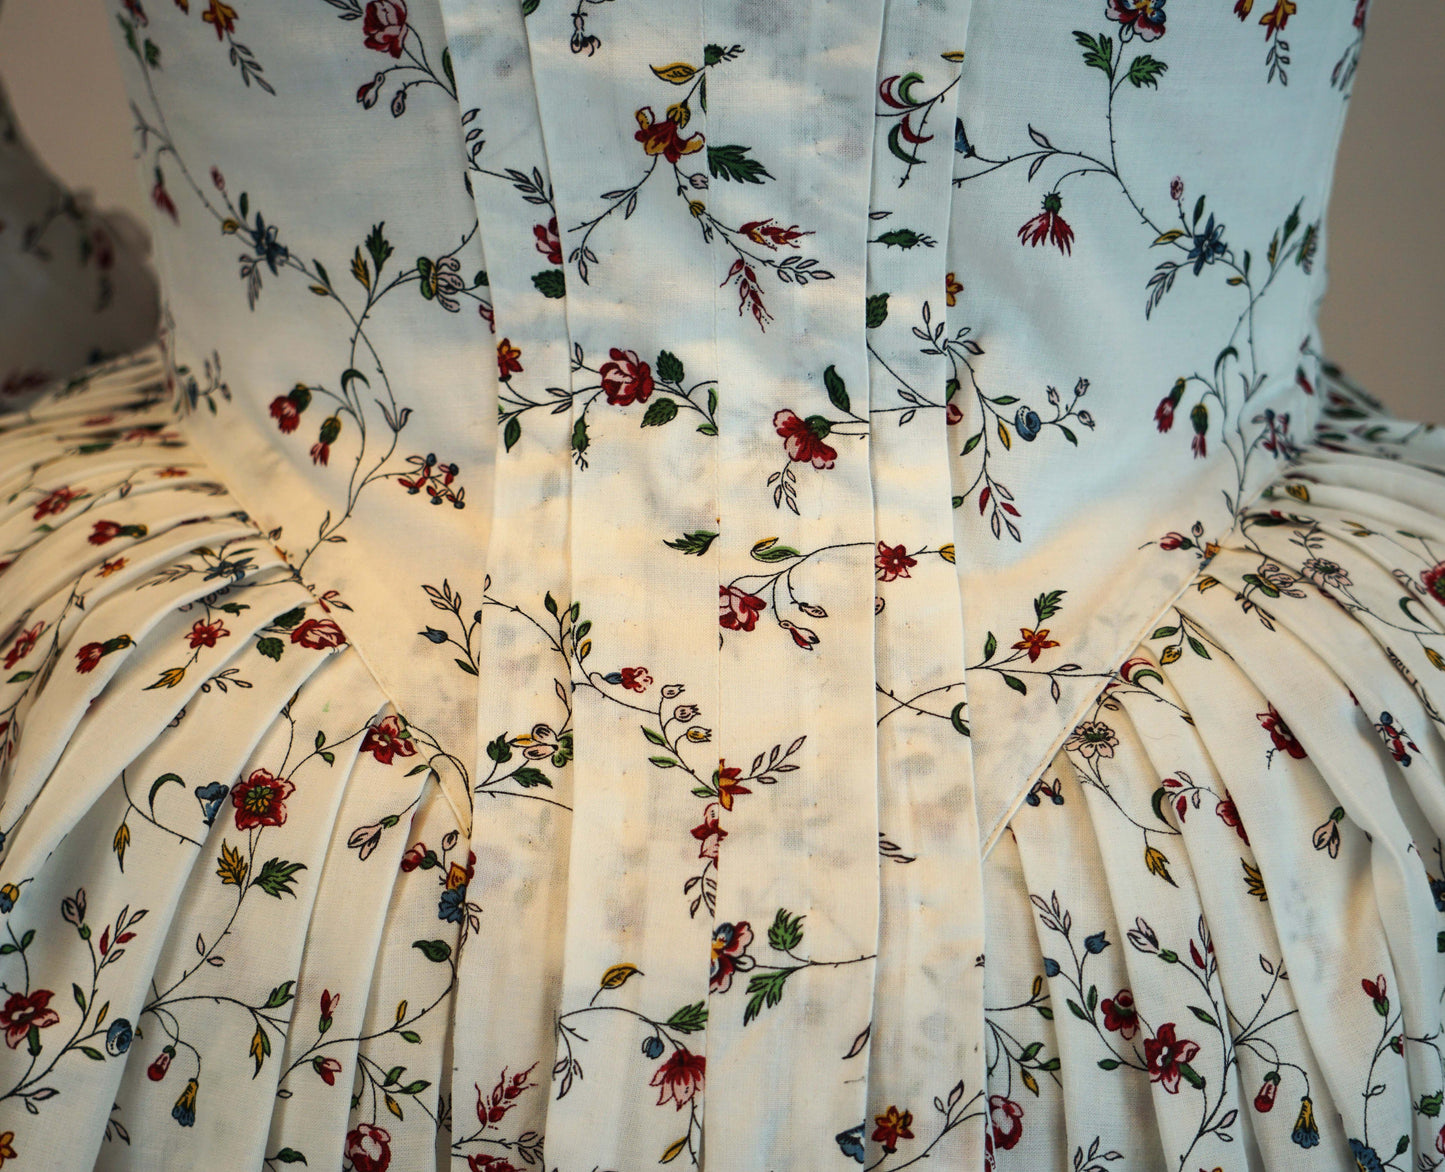 #0519 Rokoko Kleid Robe a la Anglaise 1770-90 mit zwei Ärmelvarianten, Cutaway Front und Po-Kissen Schnittmuster Größe EU 34-56 PDF Download